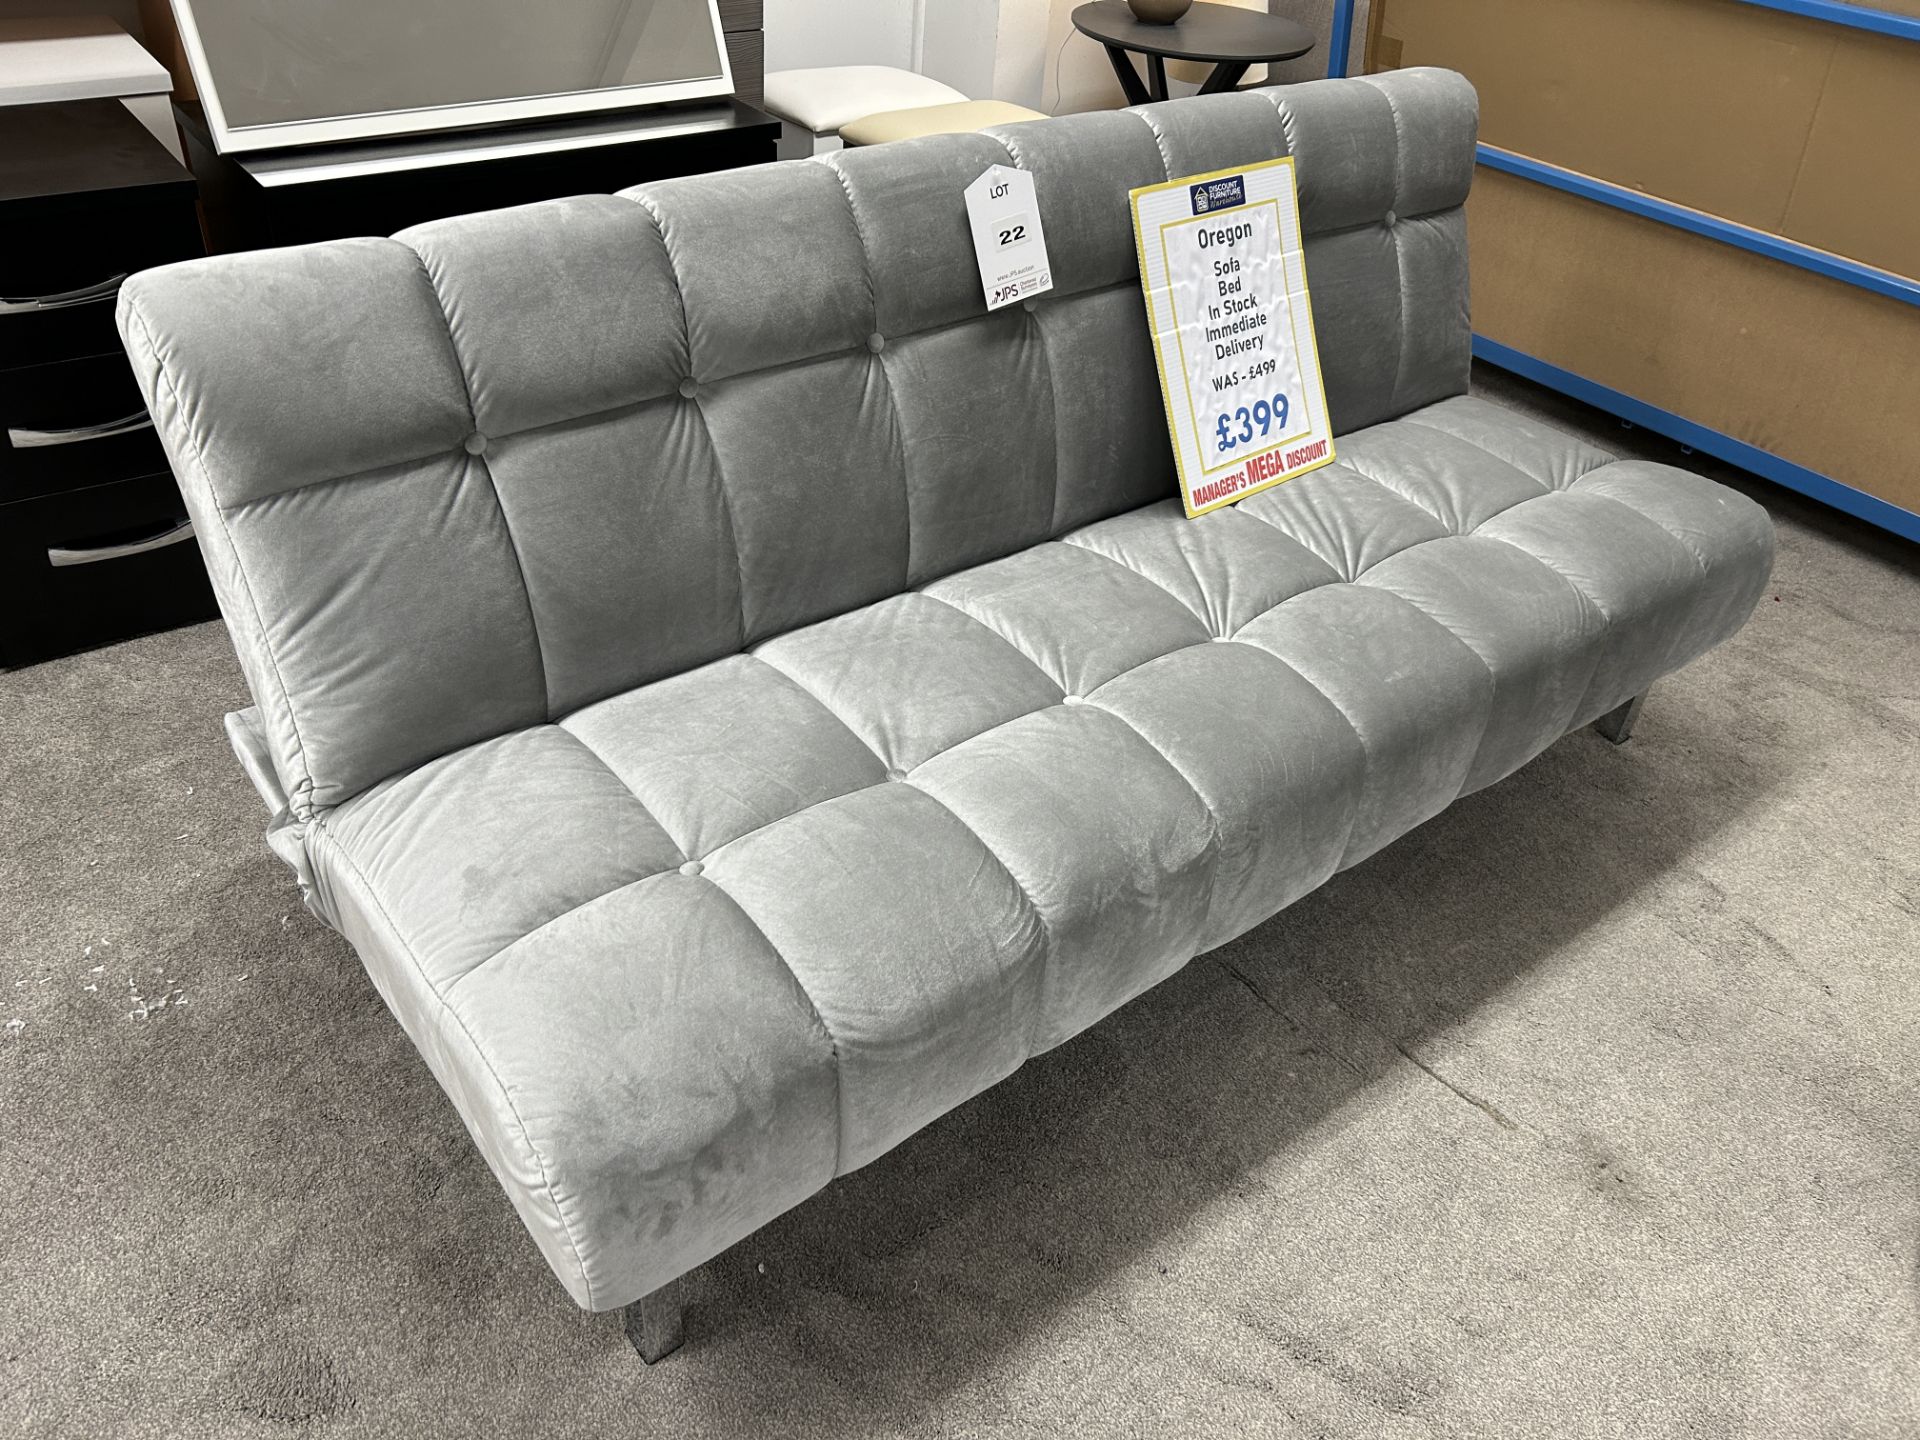 Ex-Display Oregan Sofa Bed | RRP £499 - Image 2 of 2